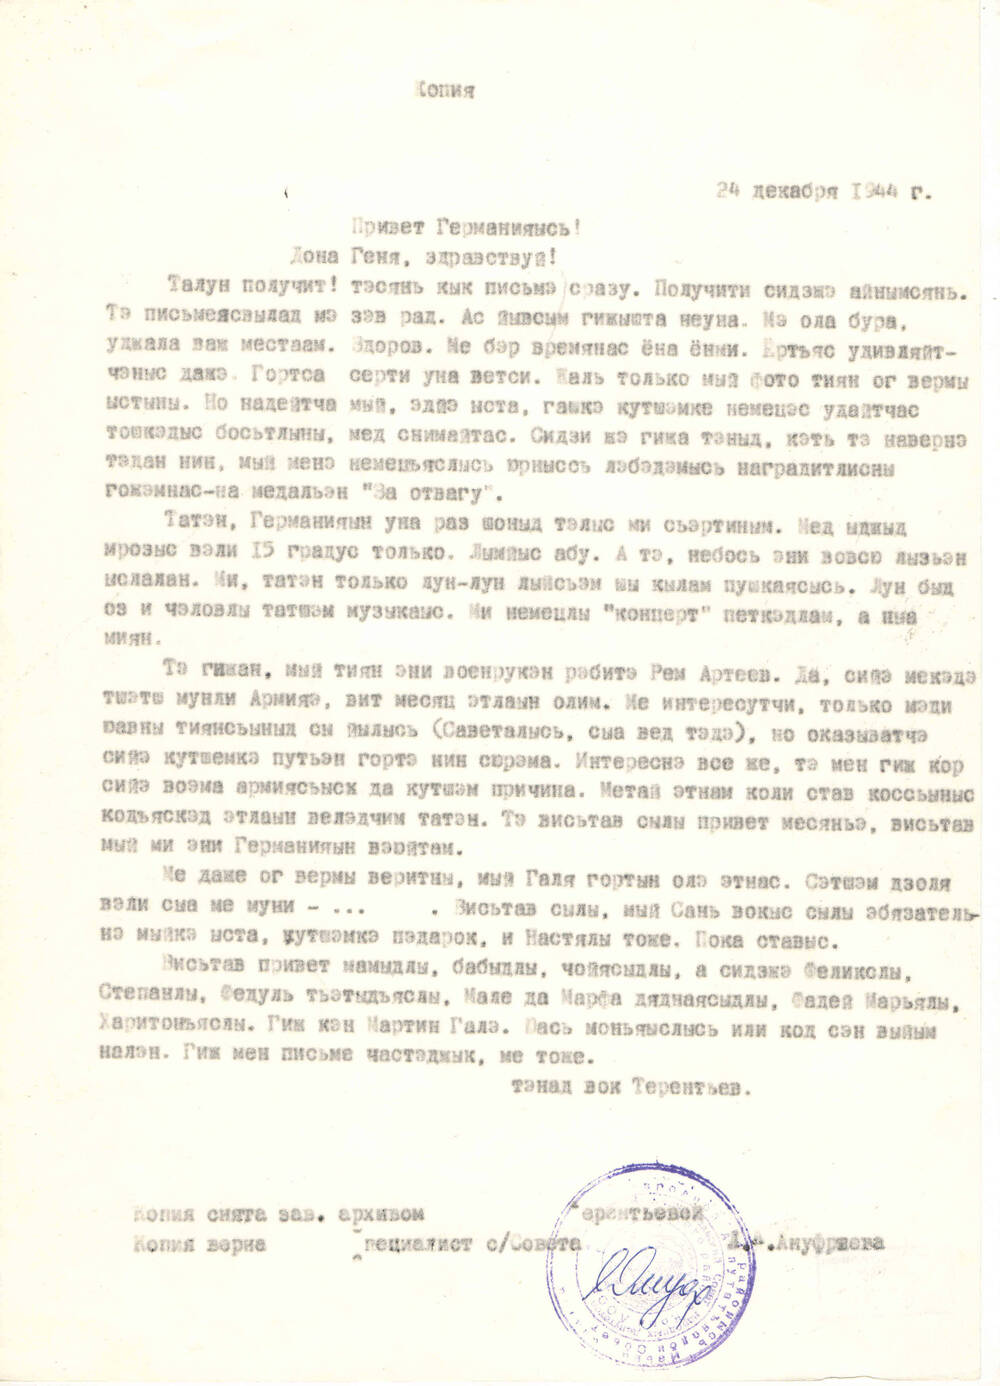 Копия письма с Германии Терентьева А.М. брату в д. Бакур  от 24.12.1944 года (оригинал хранится у Терентьевой А.А.)